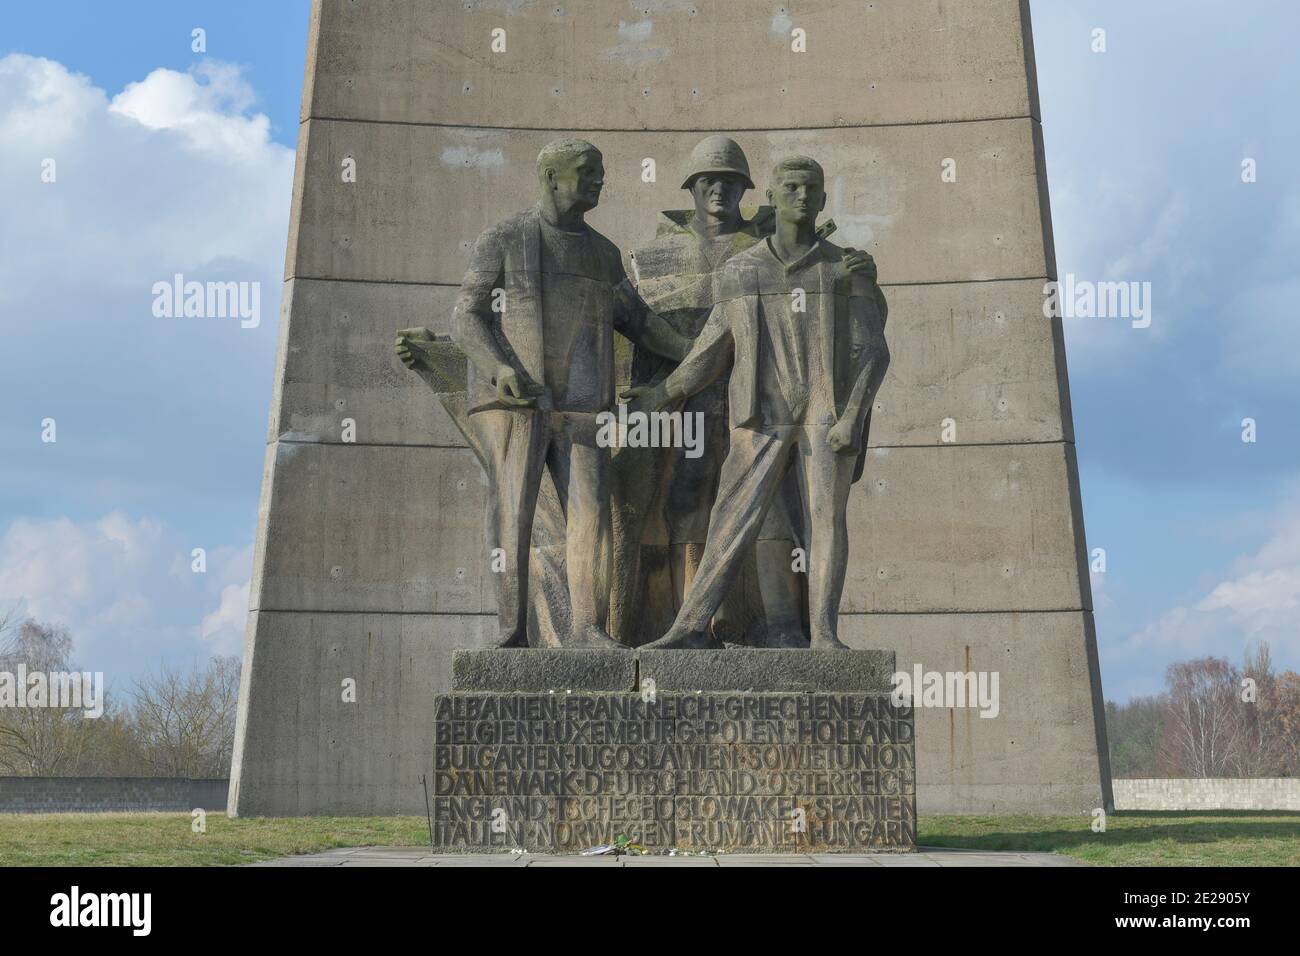 Plastikgruppe 'Befreiung' von Rene Graetz, Nationale Mahn und Gedenkstätte der DDR von 1961, Gedenkstätte und Museum Konzentrationslager Sachsenhausen Foto Stock